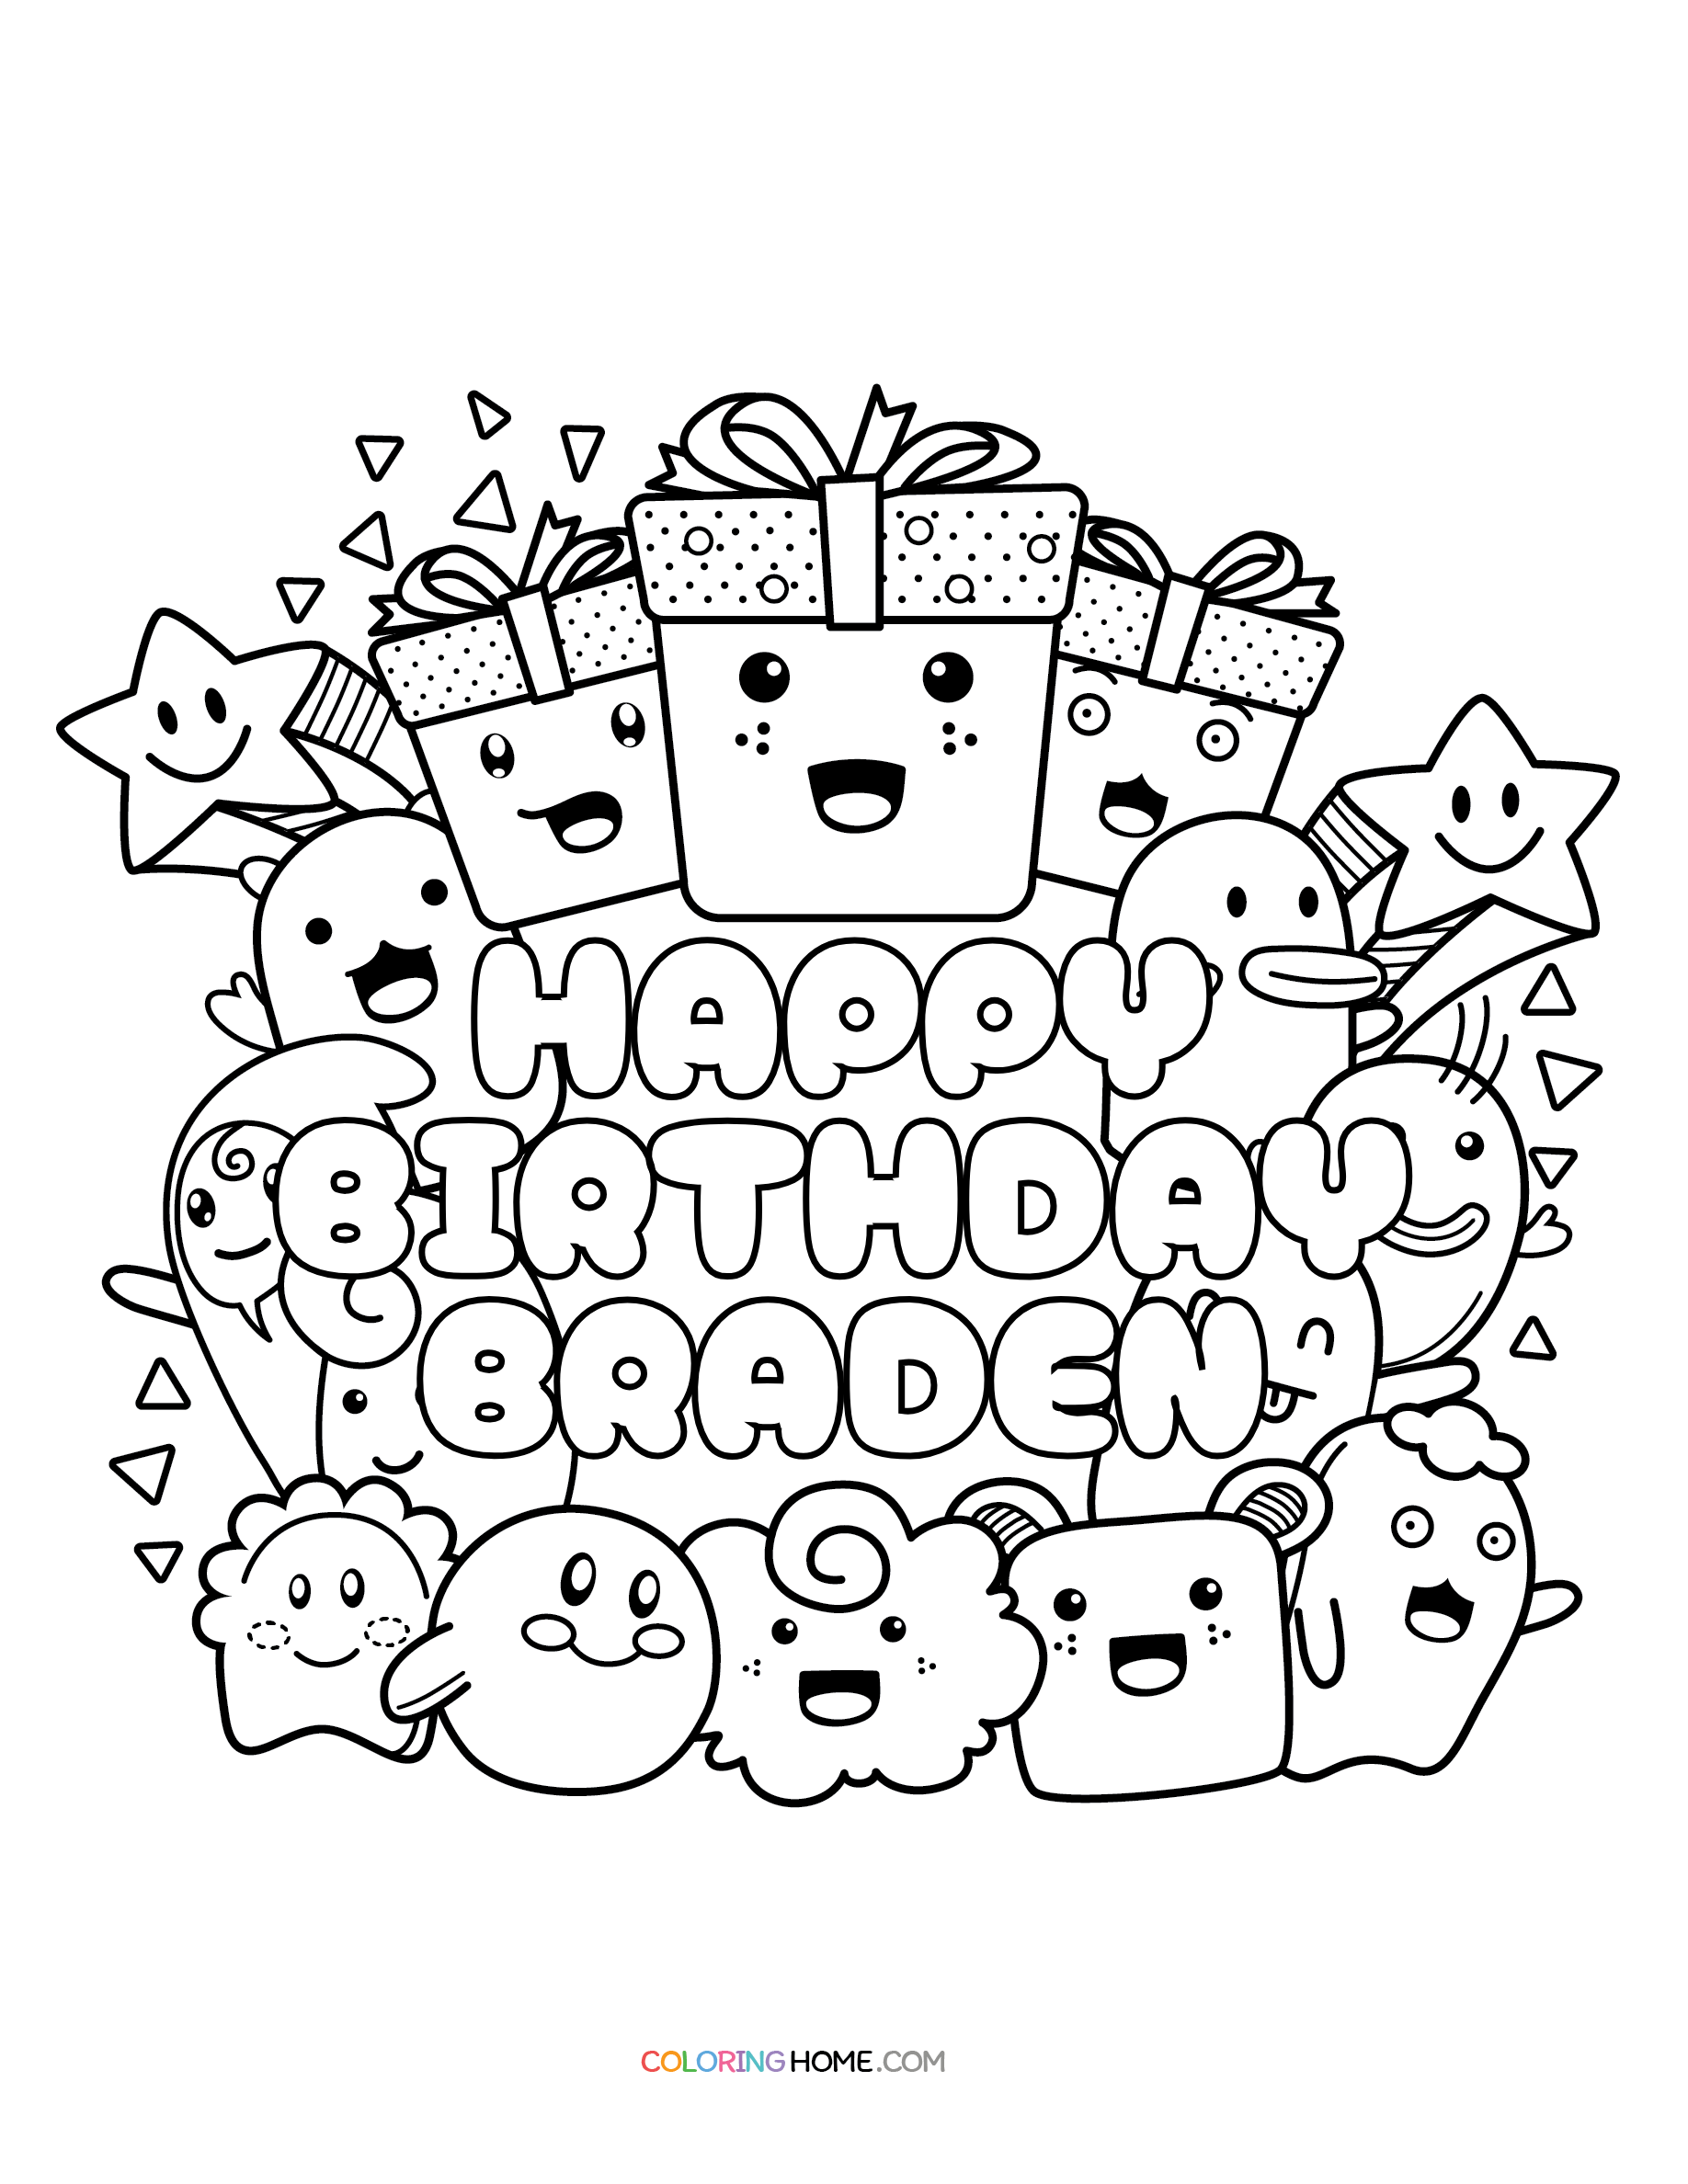 Happy Birthday Braden coloring page